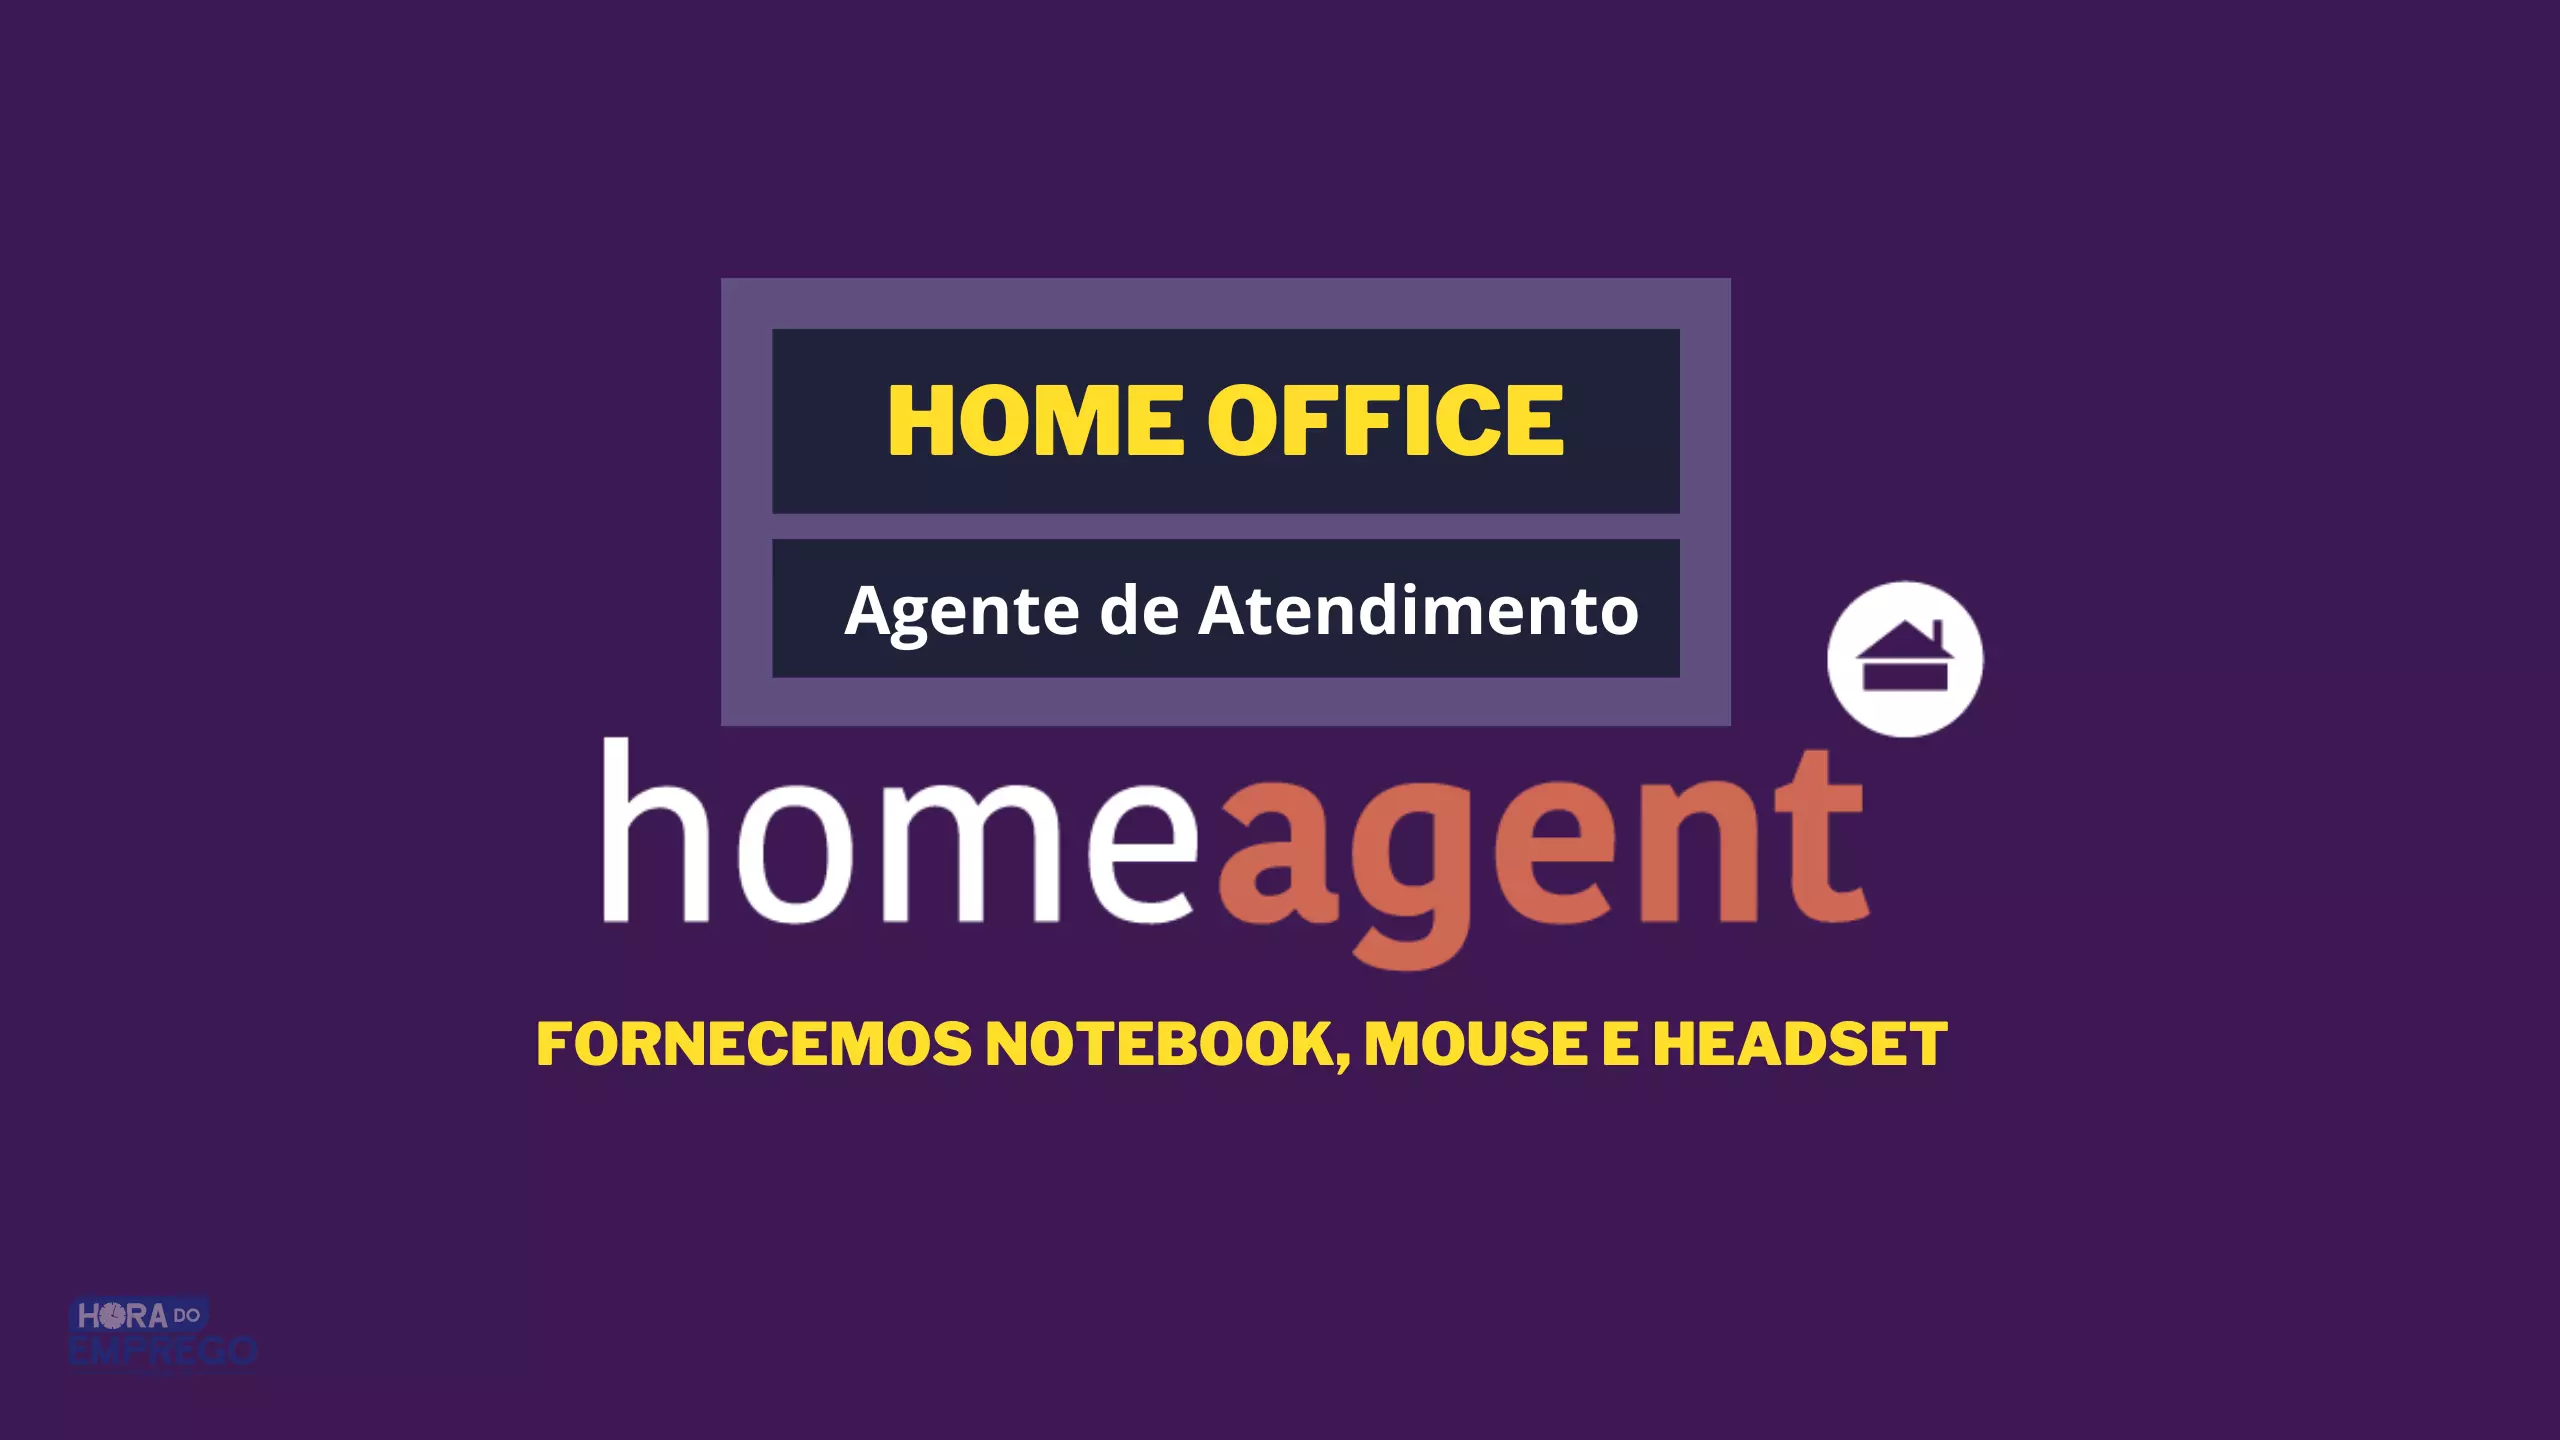 Trabalhe em Casa: A Empresa Home Agent está contratando para DIVERSAS ÁREAS em HOME OFFICE e ainda forenece equipamento para TRABALHAR DE CASA